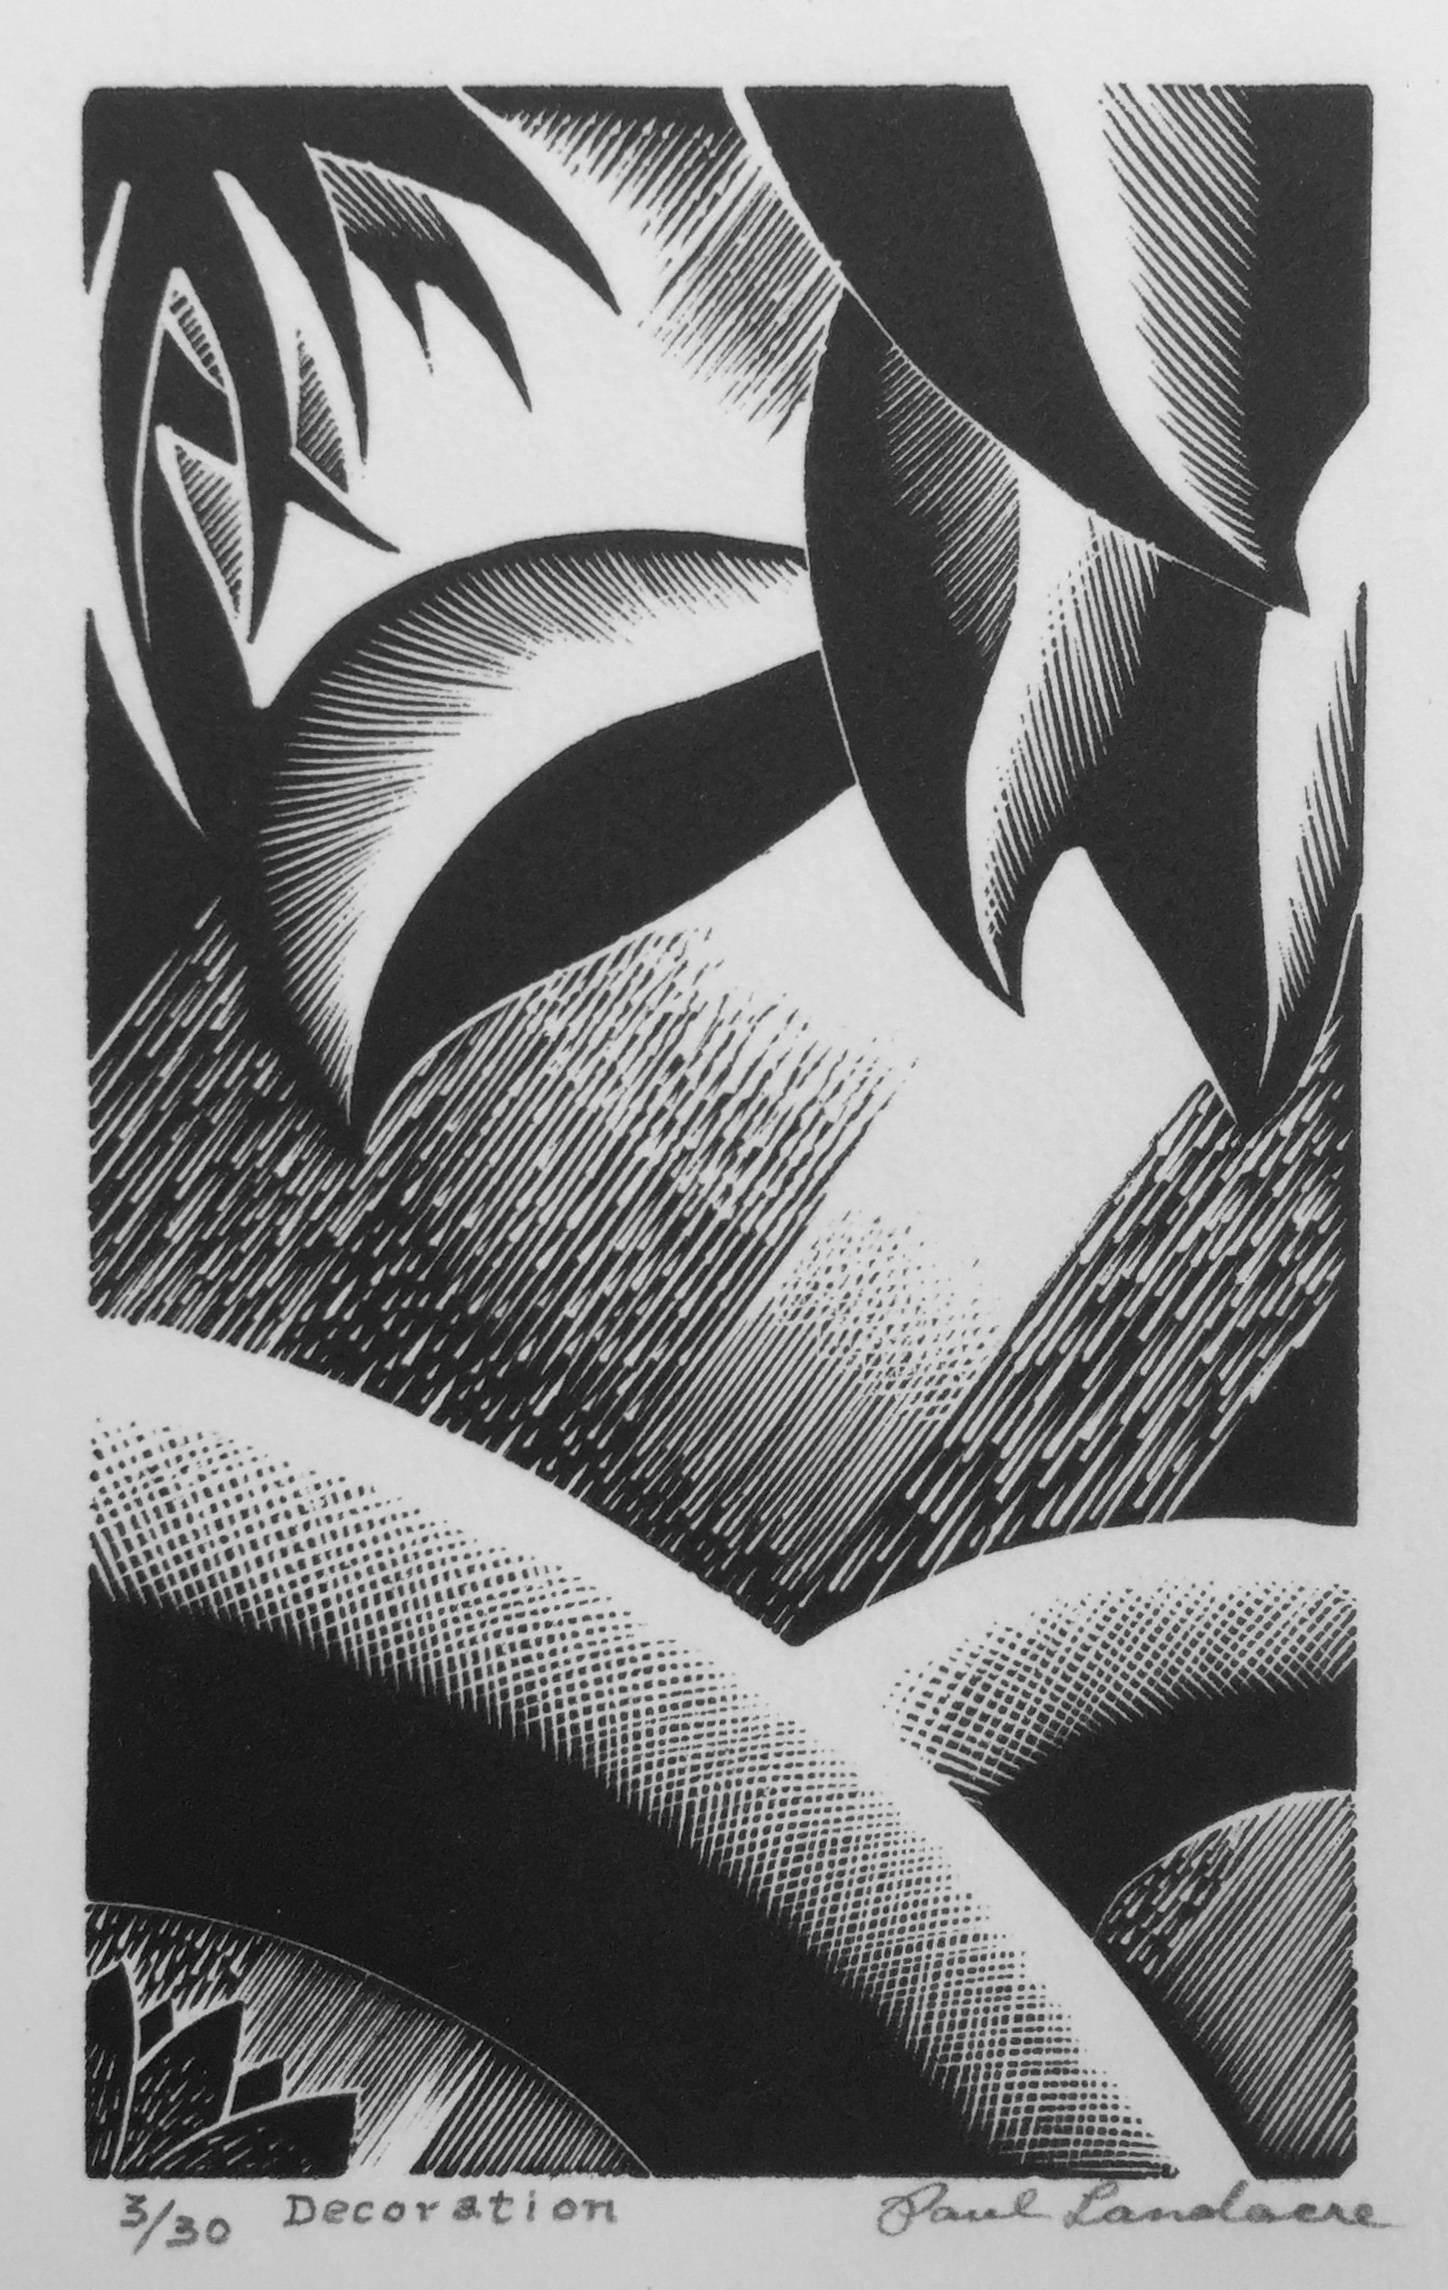 Abstract Print Paul Landacre - DÉCORATION